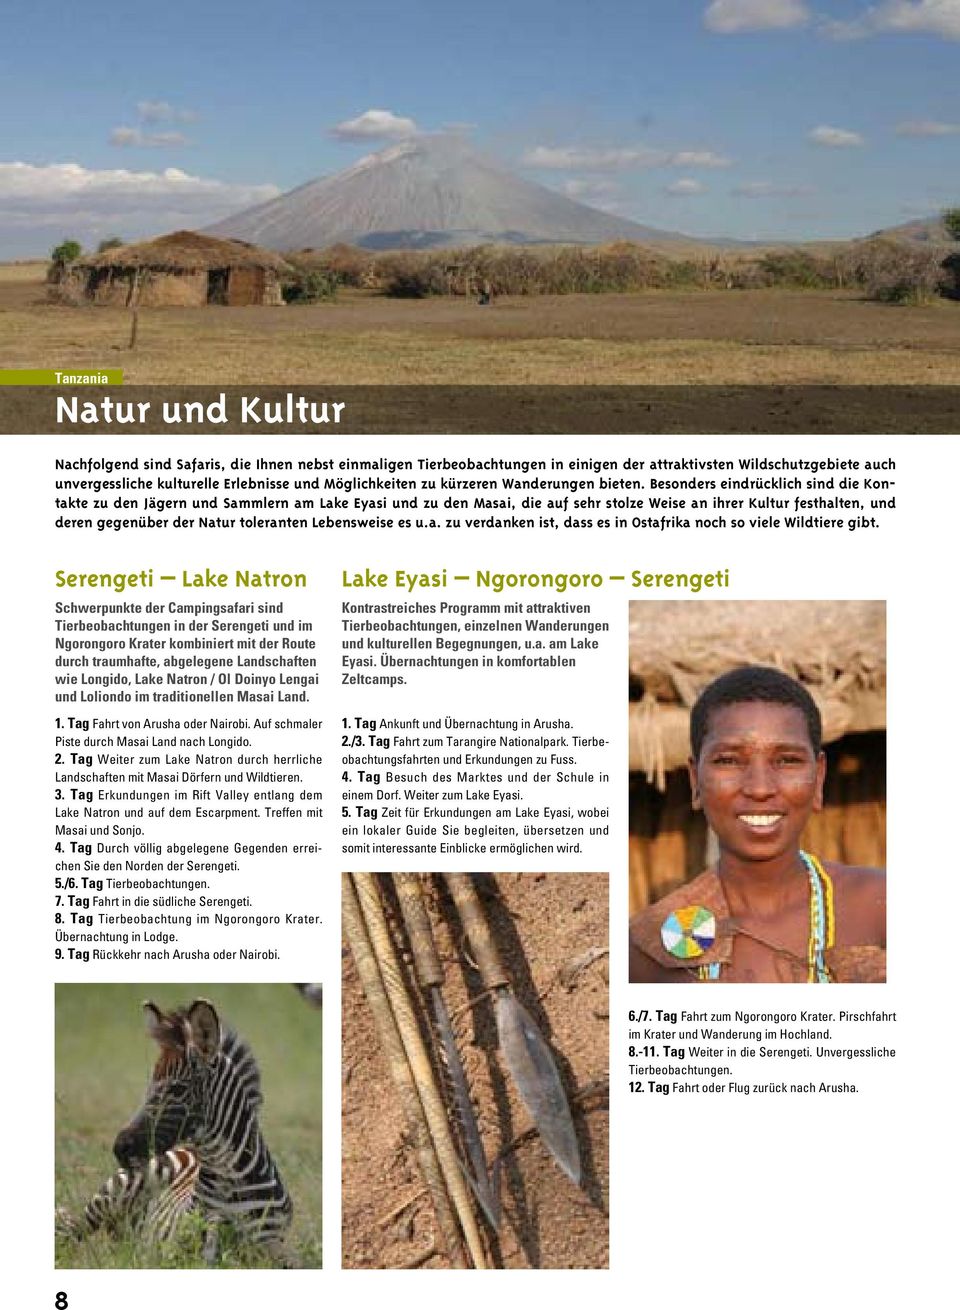 Besonders eindrücklich sind die Kontakte zu den Jägern und Sammlern am Lake Eyasi und zu den Masai, die auf sehr stolze Weise an ihrer Kultur festhalten, und deren gegenüber der Natur toleranten